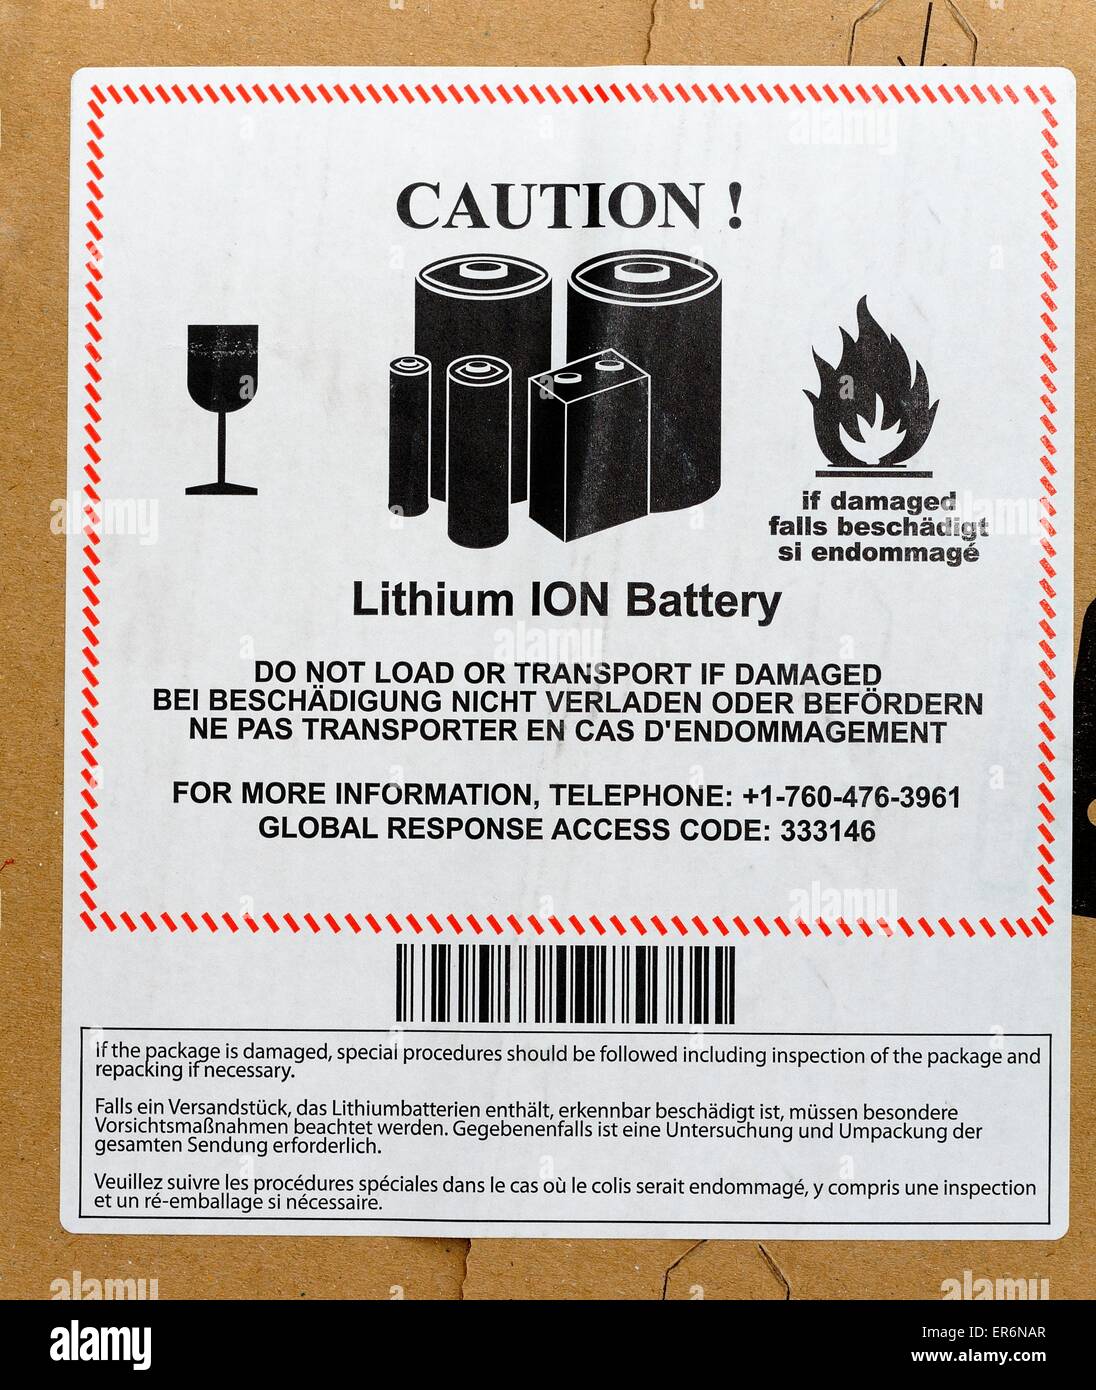 étiquette batterie lithium ion Banque de photographies et d'images à haute  résolution - Alamy